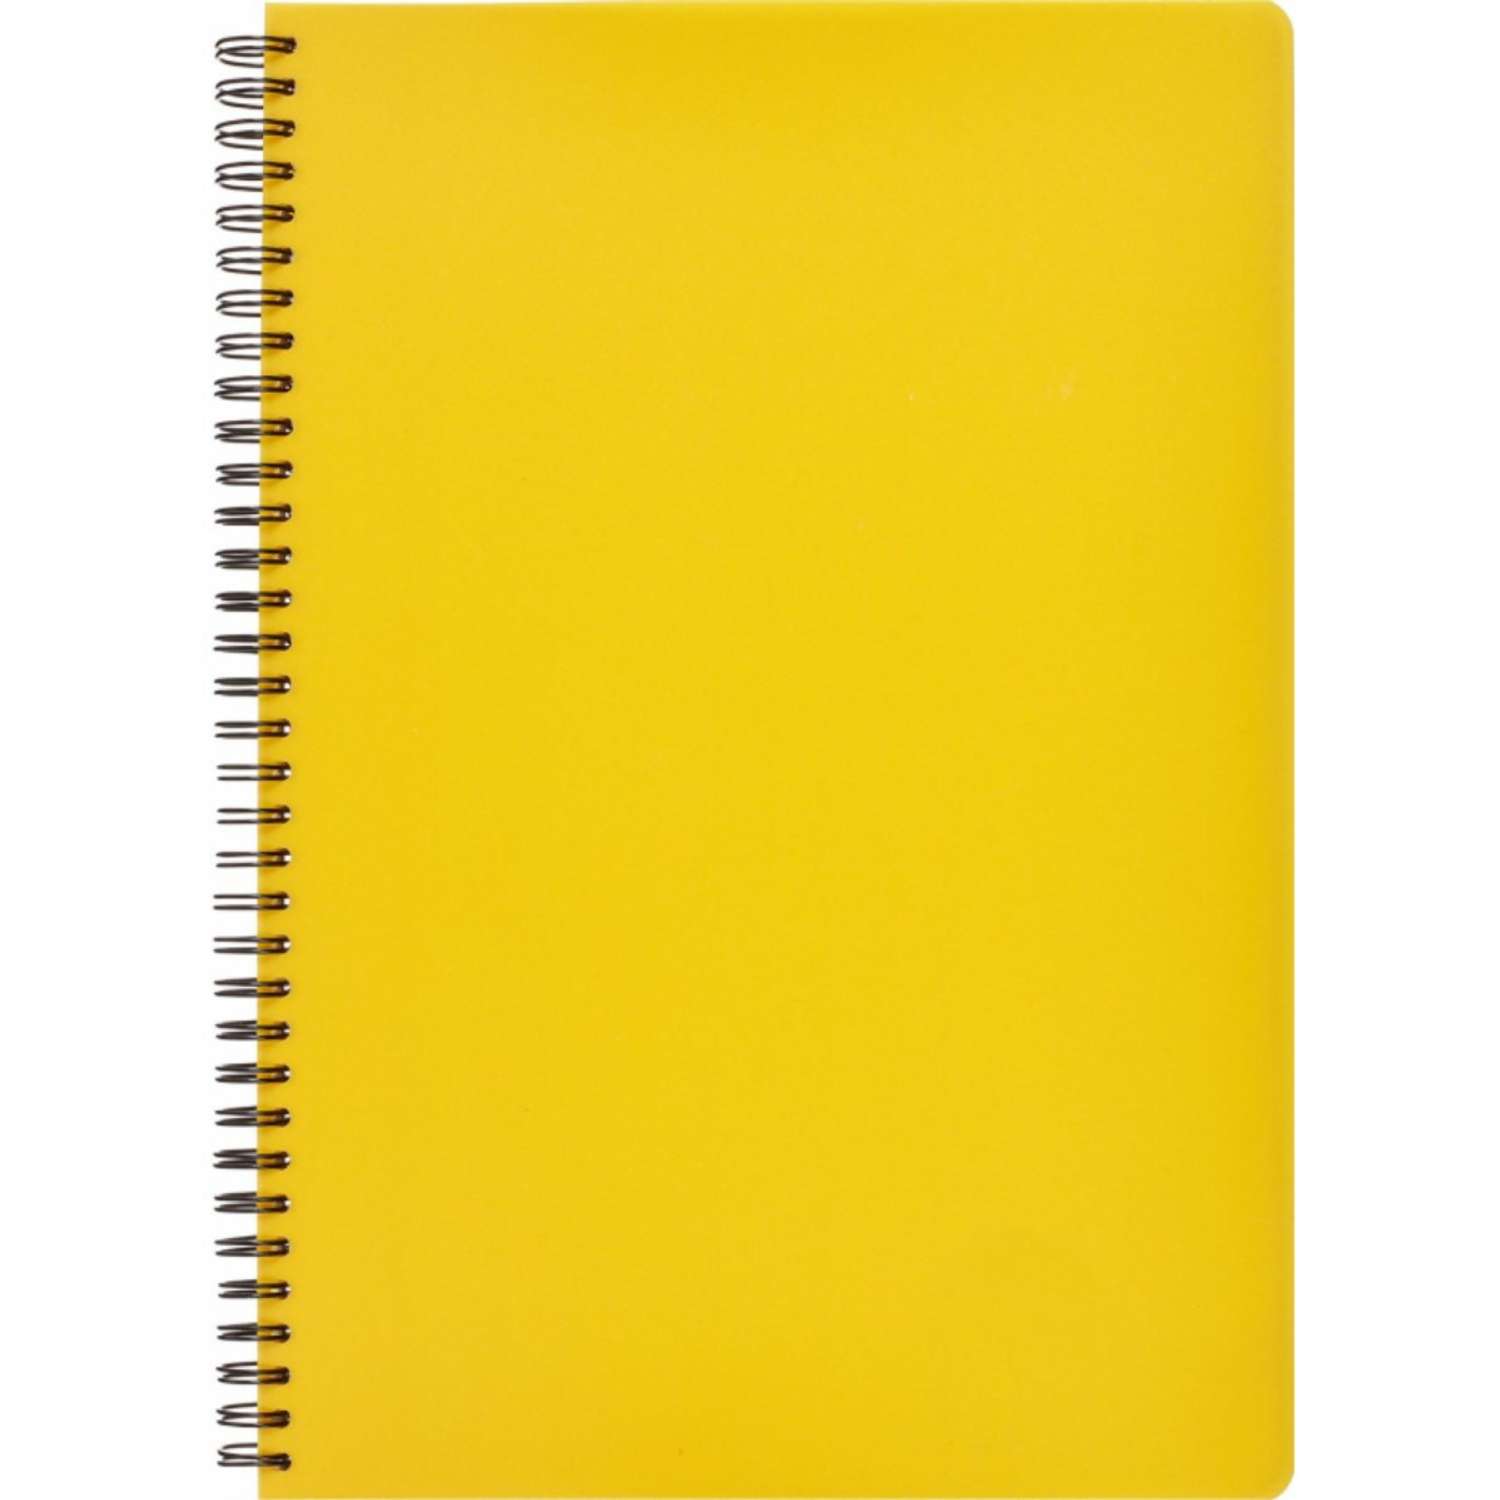 Бизнес-тетрадь Attache Bright colours А4 96 листов клетка спираль пластиковая обложка тонированный блок желтый - фото 2